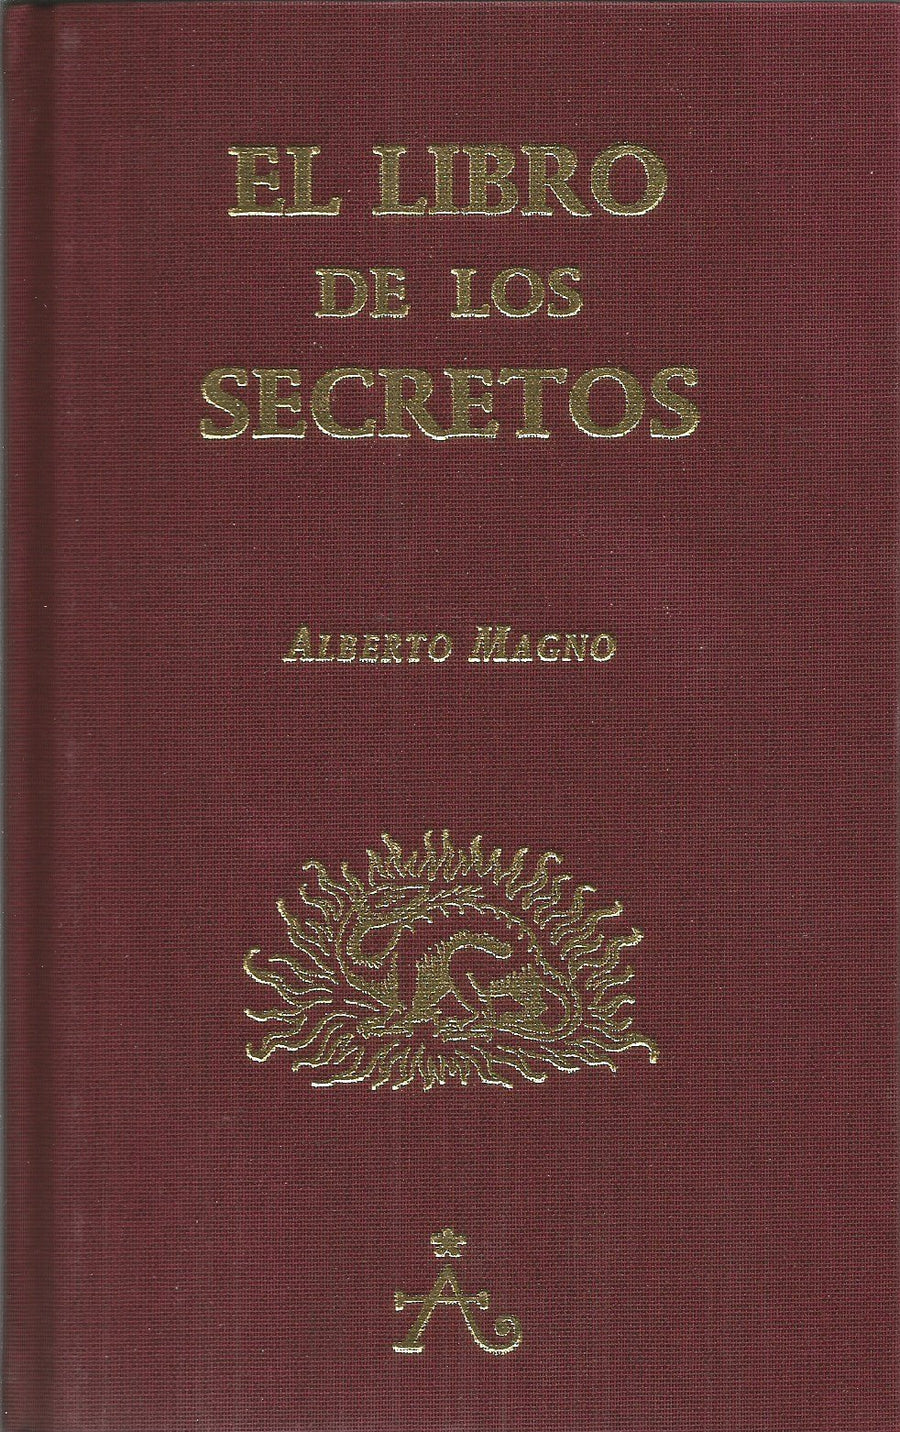 El Libro De Los Secretos